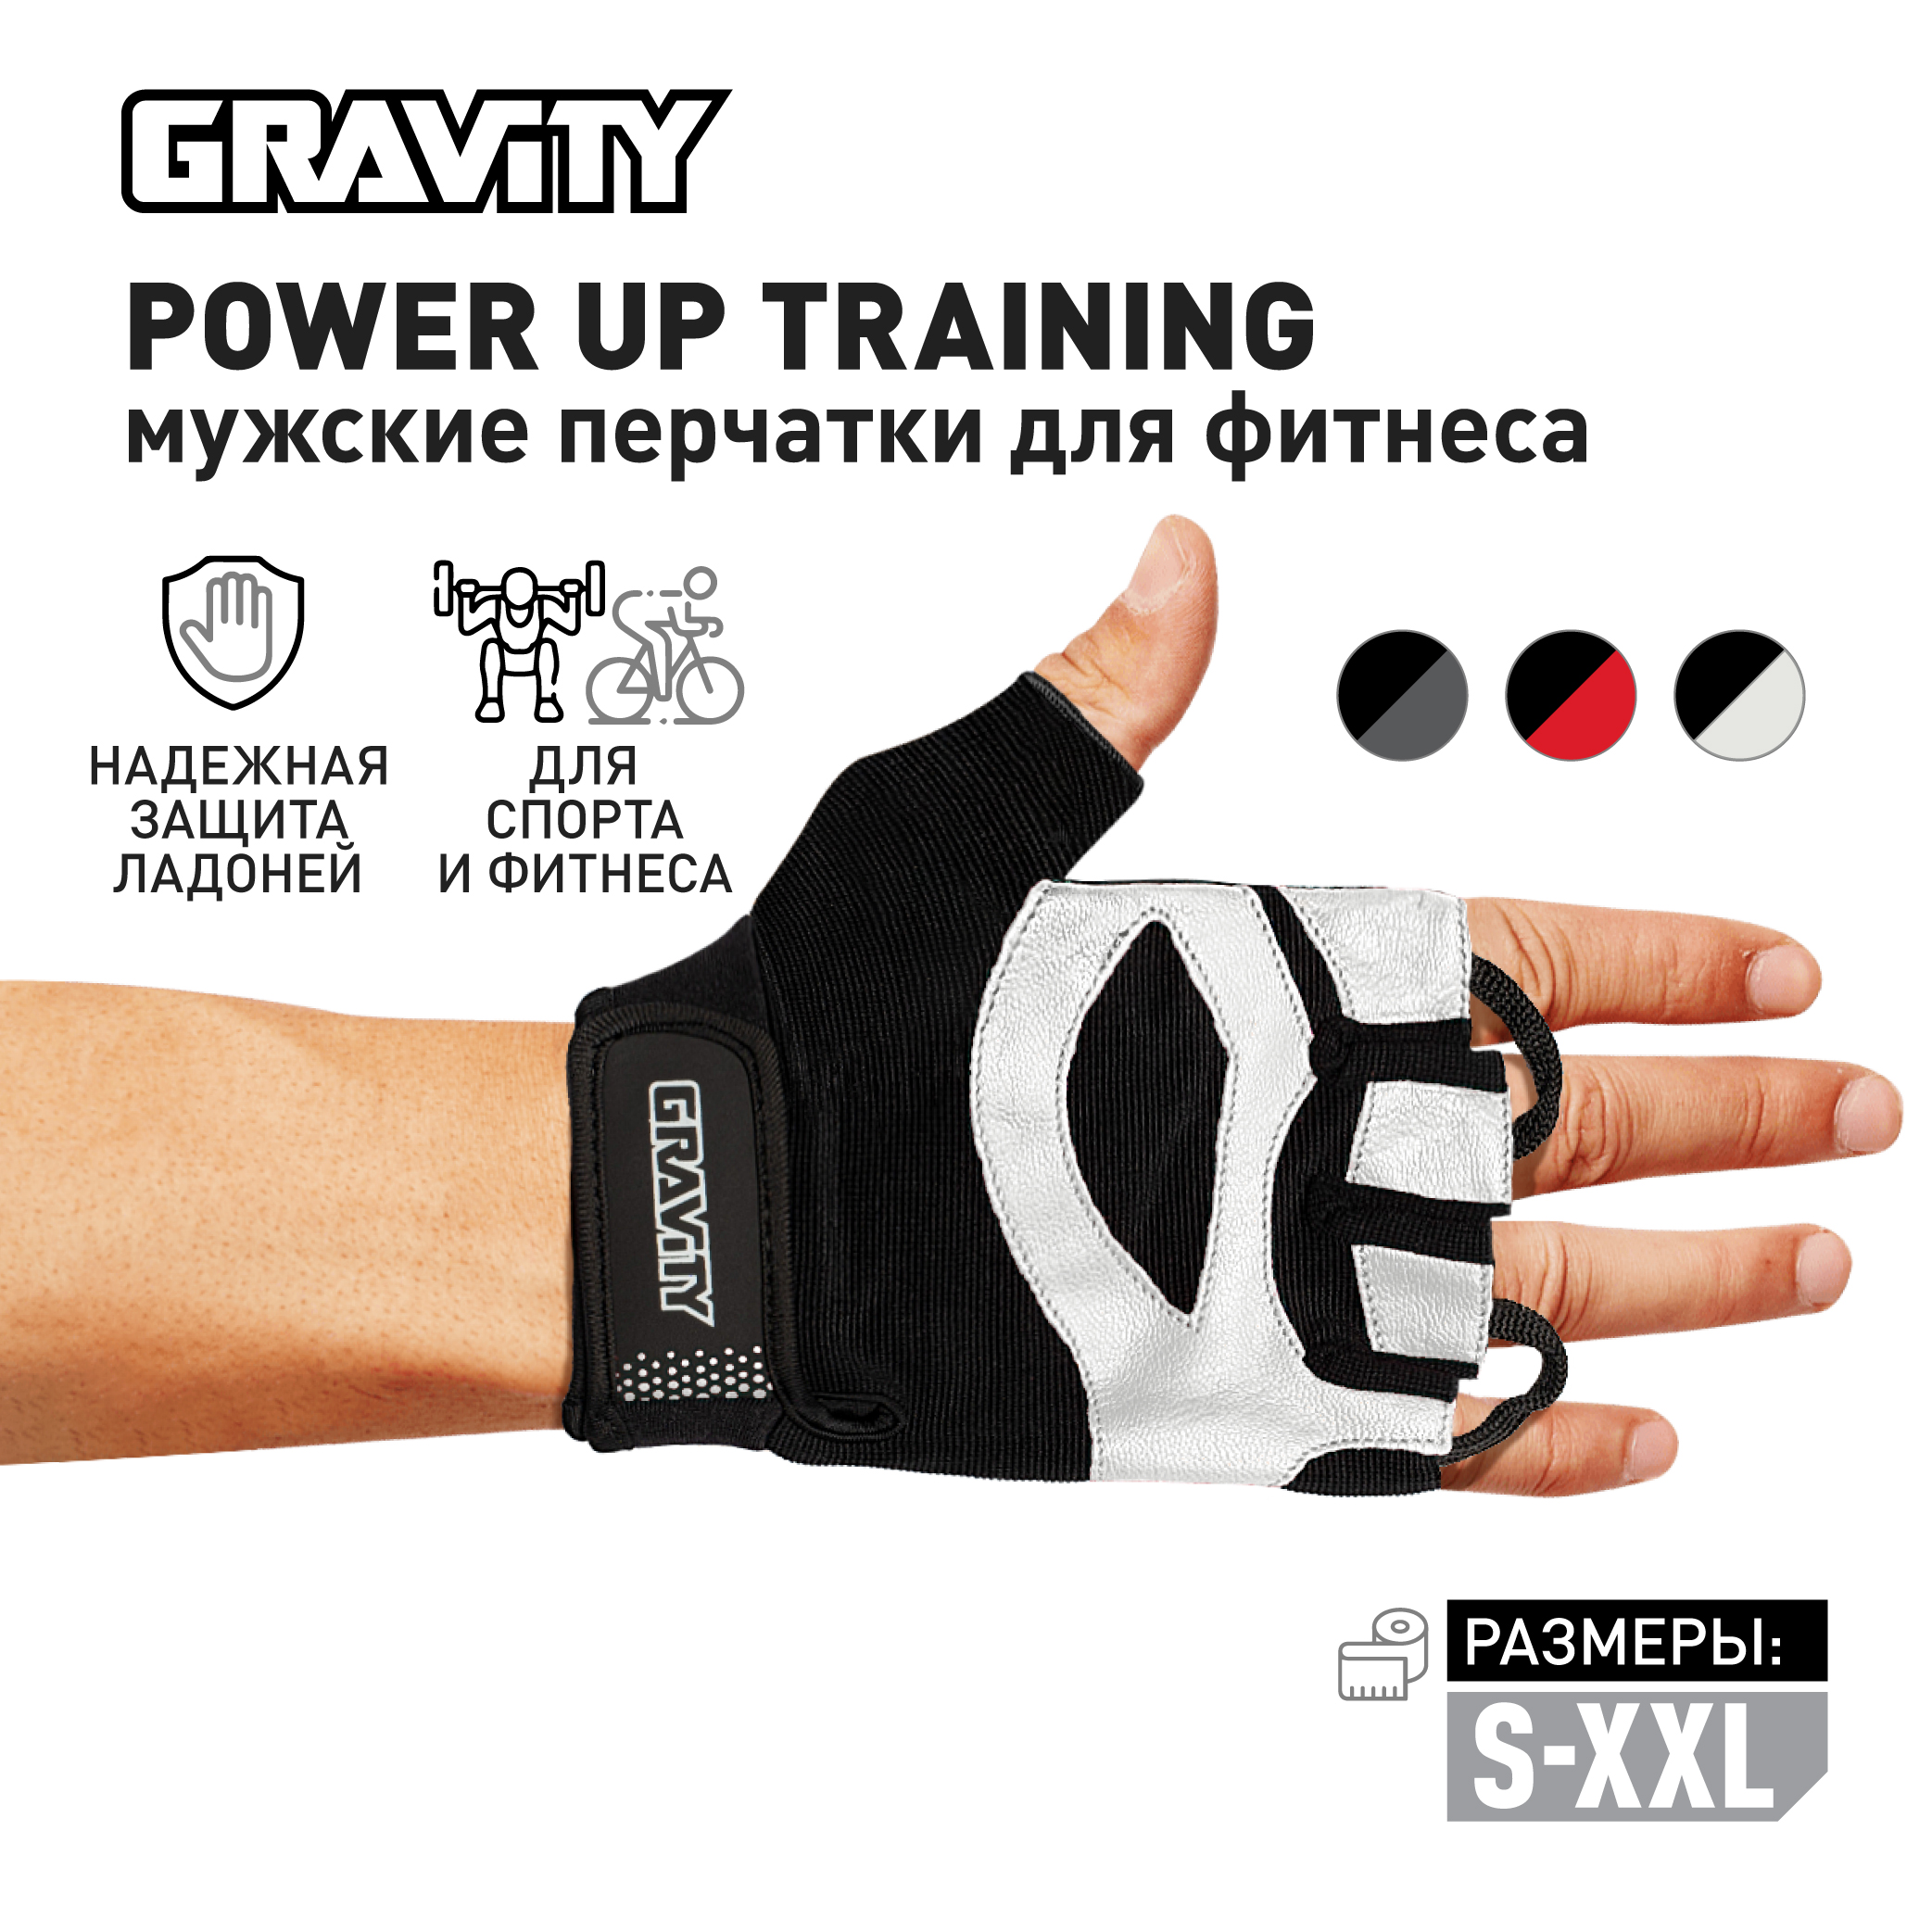 Мужские перчатки для фитнеса Gravity Power Up Training черно-белые, M